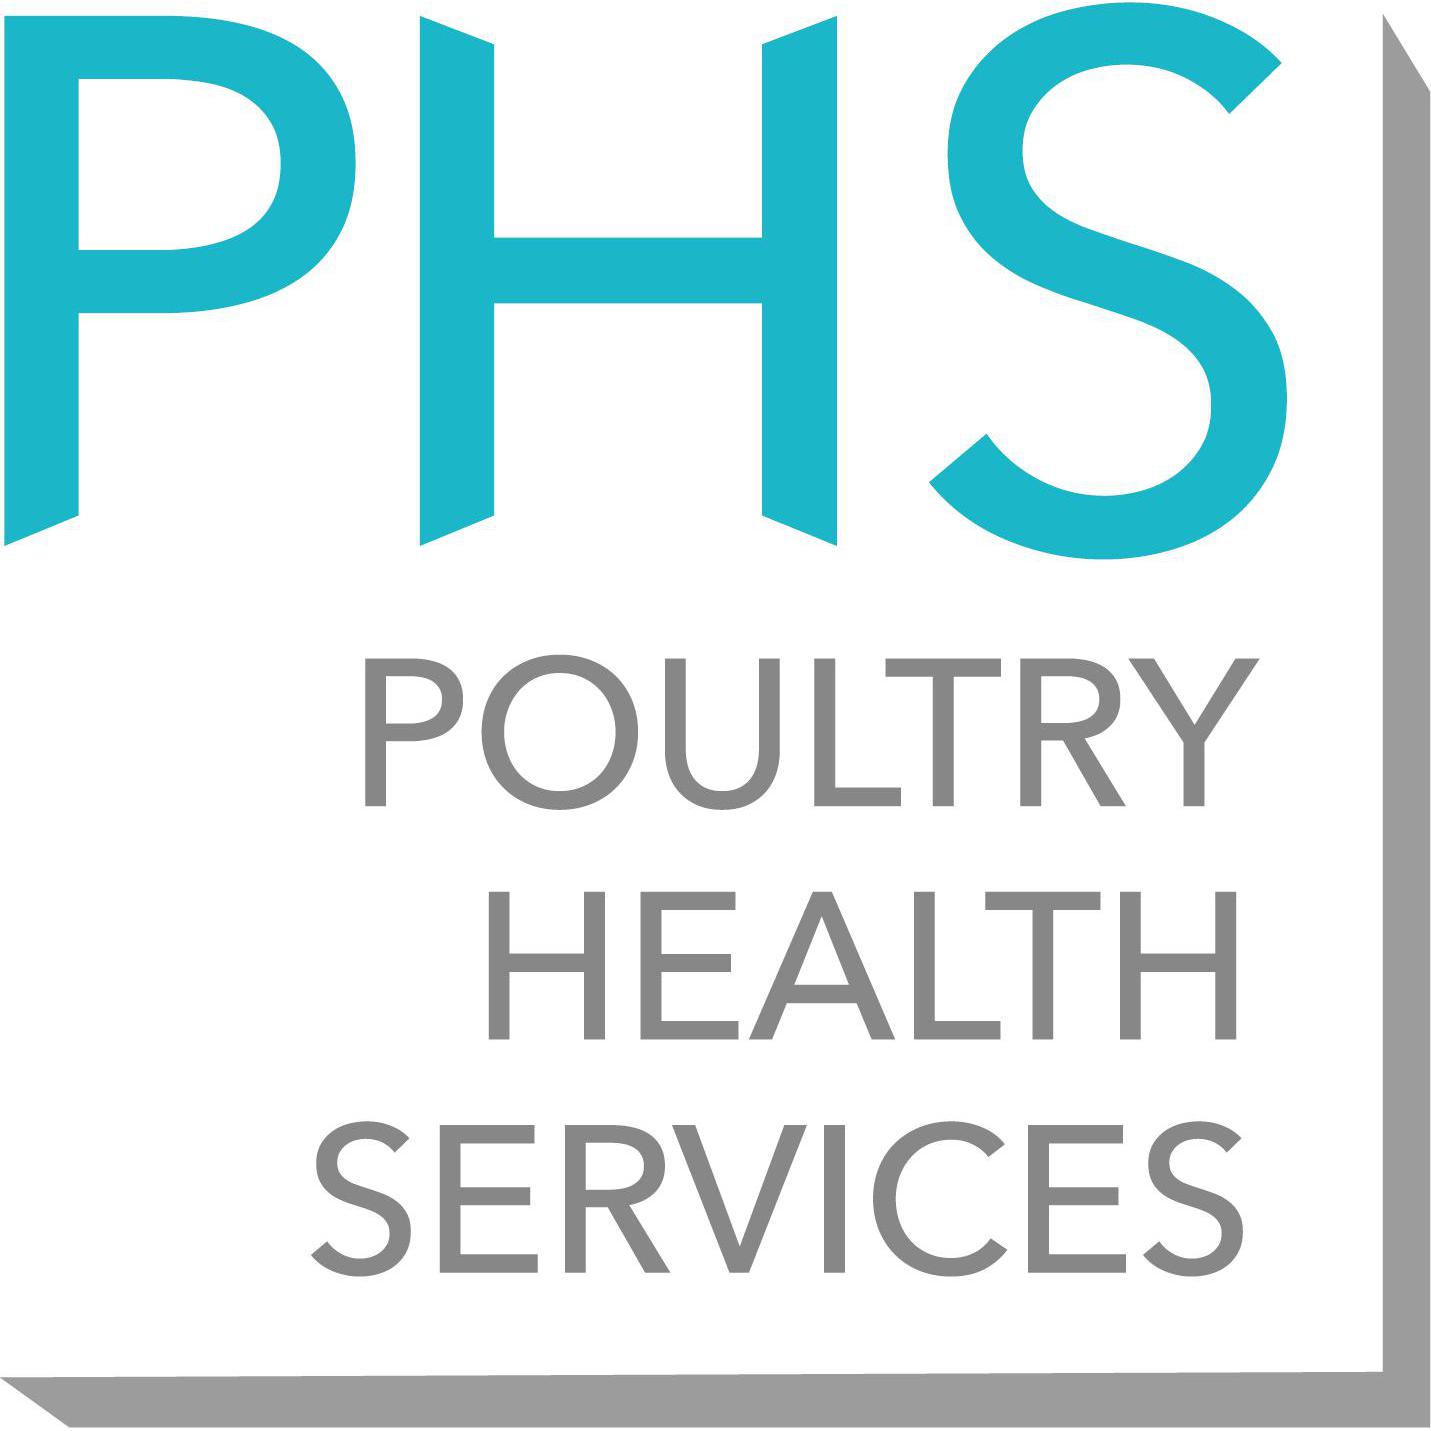 Poultry Health Services, Preston - Preston, Lancashire PR3 5DD - 01829 740639 | ShowMeLocal.com